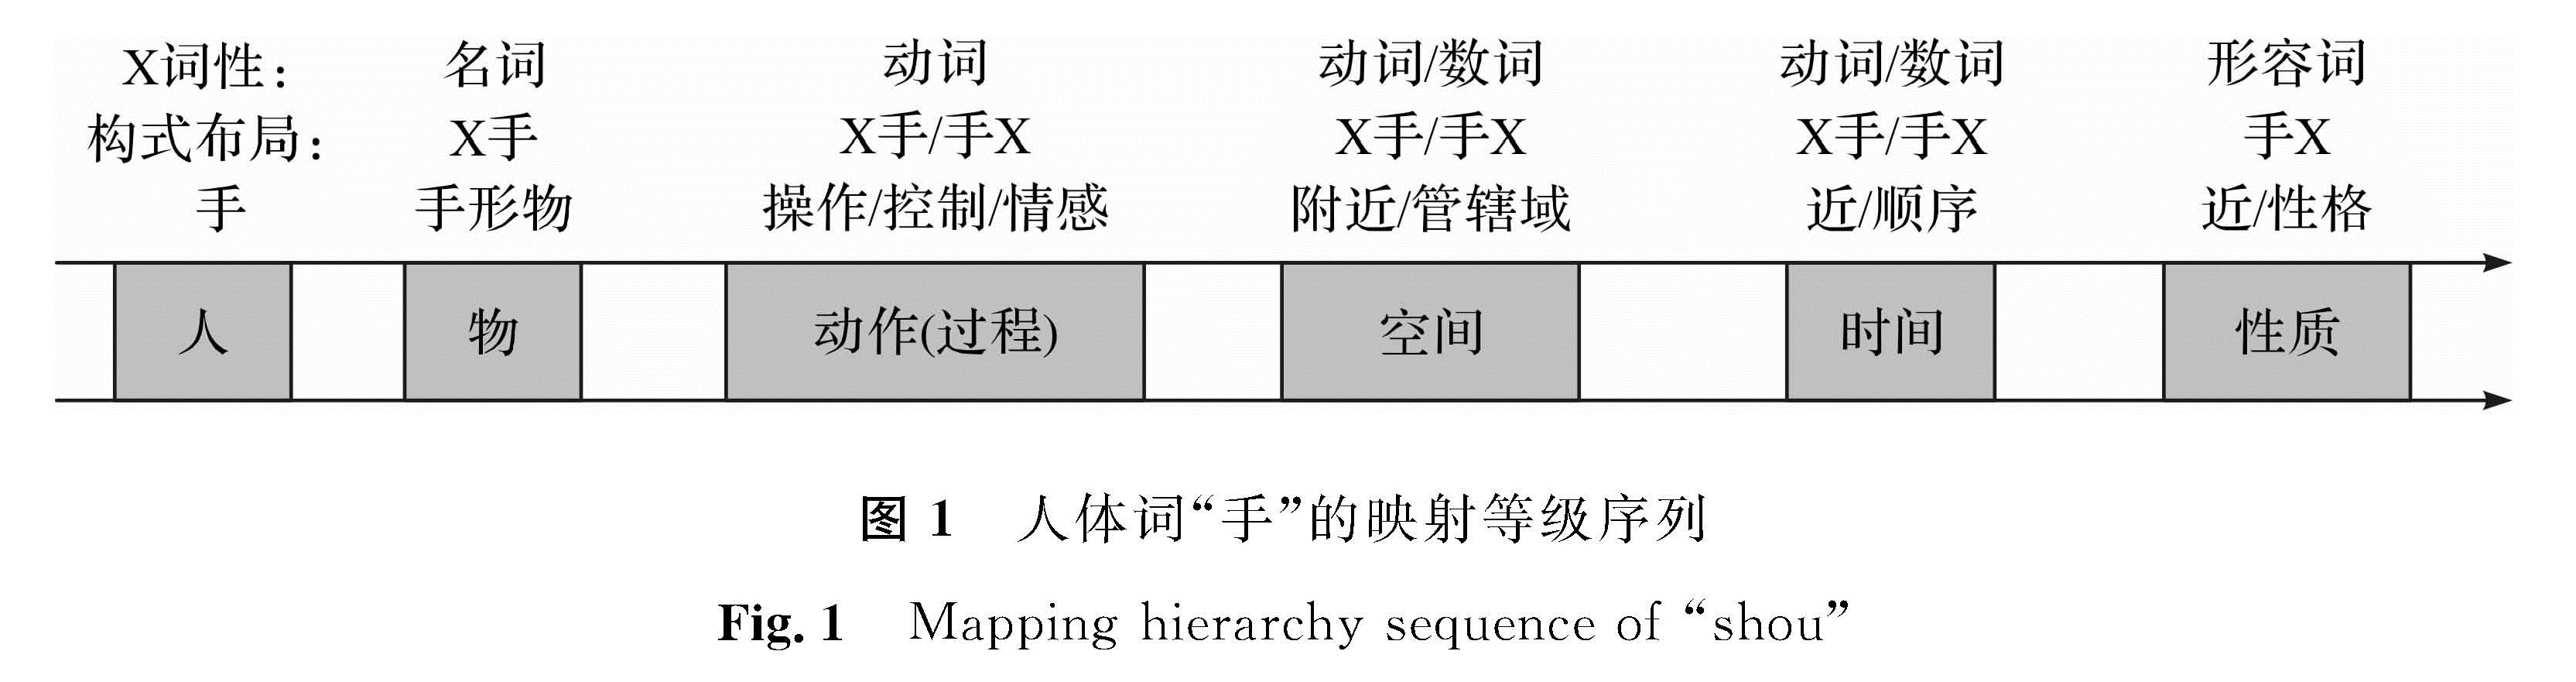 图1 人体词“手”的映射等级序列<br/>Fig.1 Mapping hierarchy sequence of “shou”